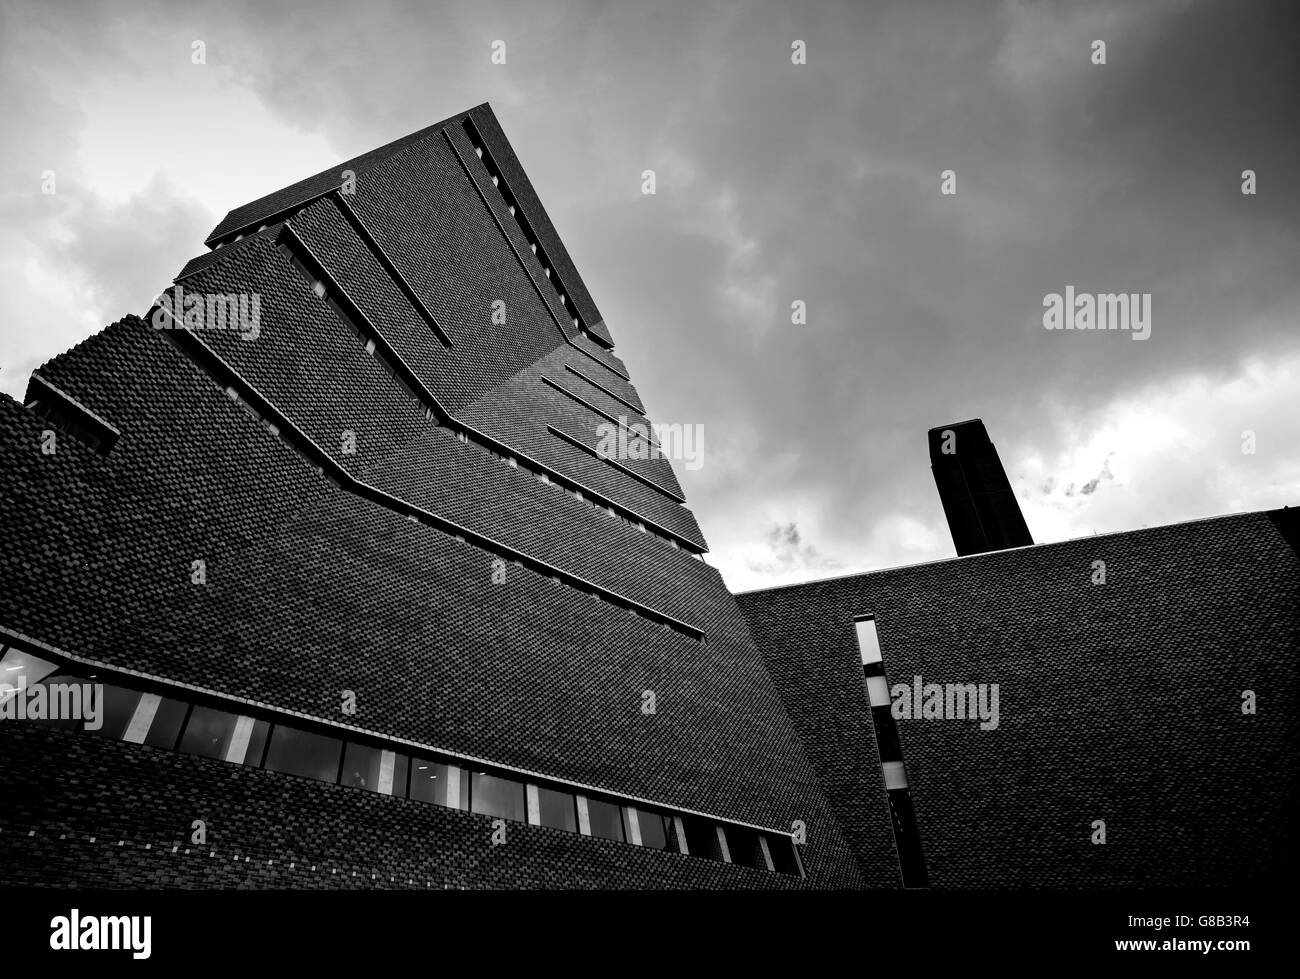 La Tate Modern art gallery extension Maison Interrupteur ouvert juin 2016, Londres, Angleterre, Royaume-Uni. Juin 2016 Banque D'Images